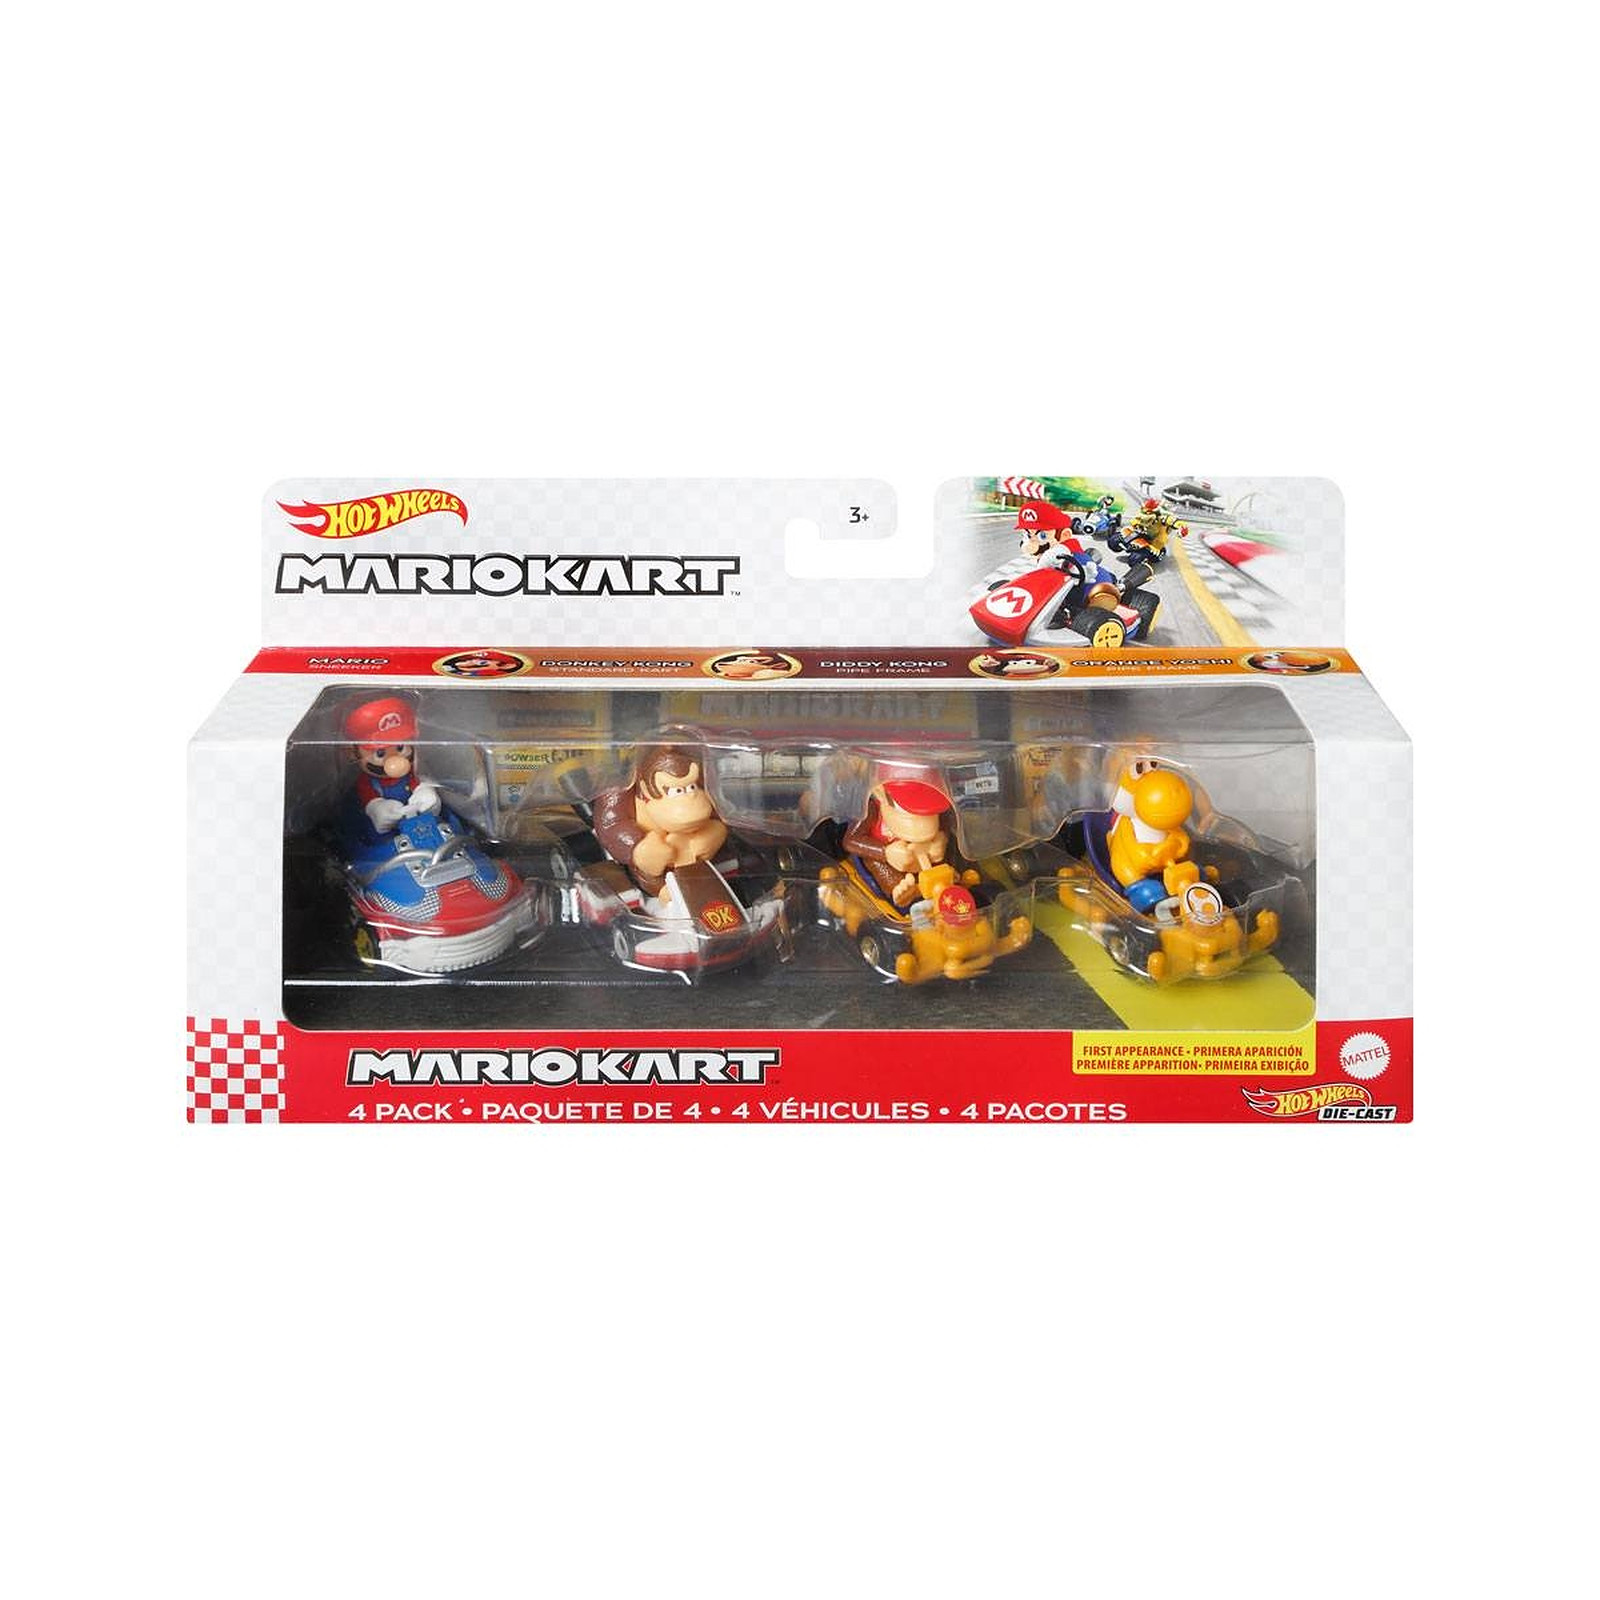 Mario Kart - Pack 4 vehicules metal Hot Wheels 1/64 Mario, Donkey Kong, Diddy Kong, Orange Yosh - Figurines Mattel